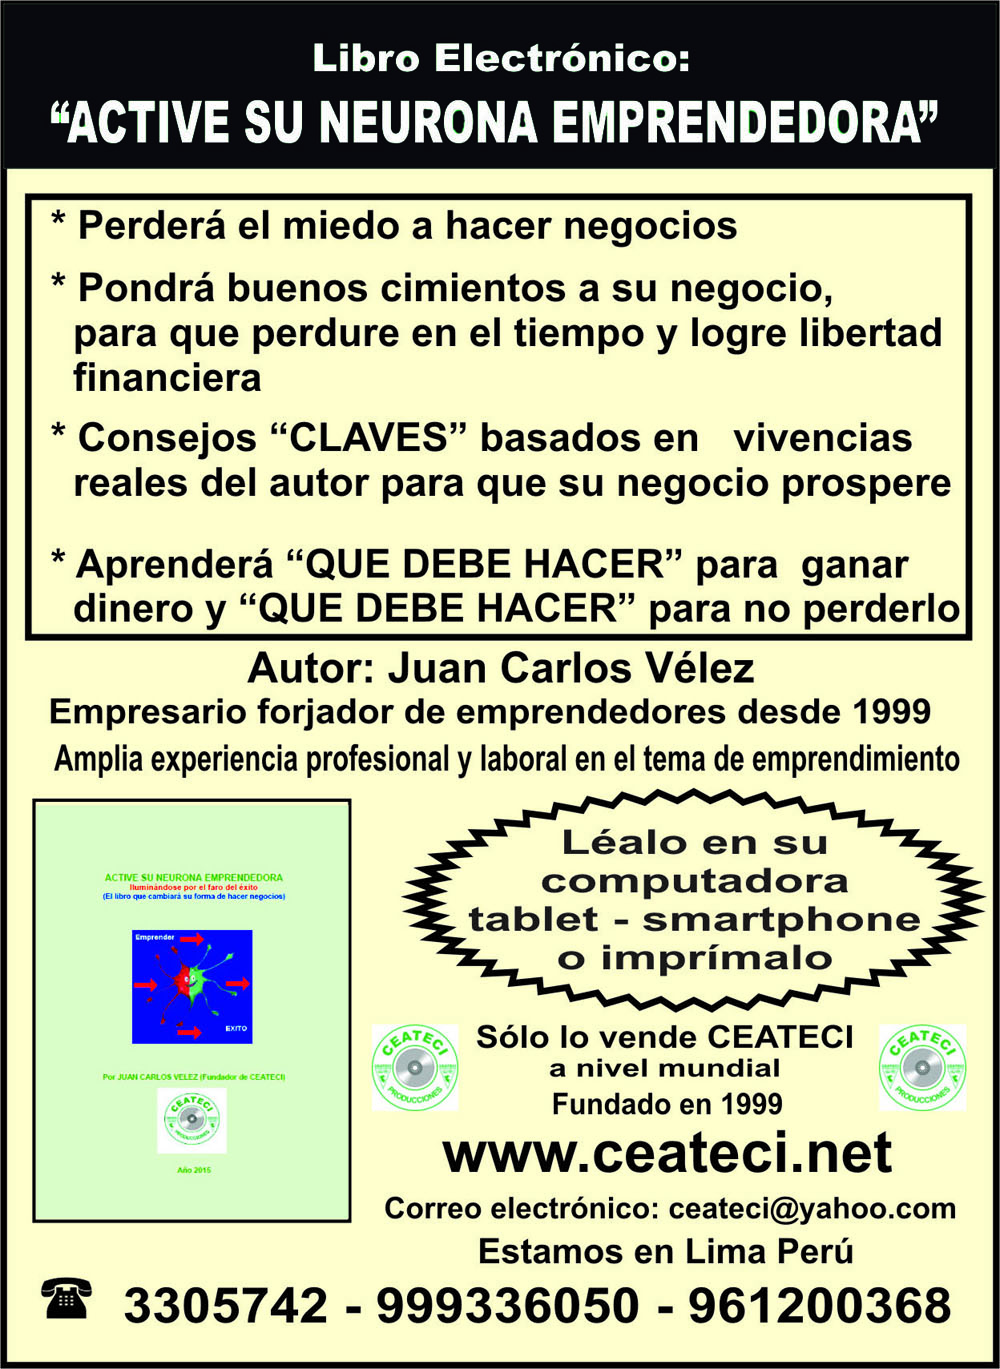 "ACTIVE SU NEURONA EMPRENDEDORA"- Libro de Ceateci para negocios.